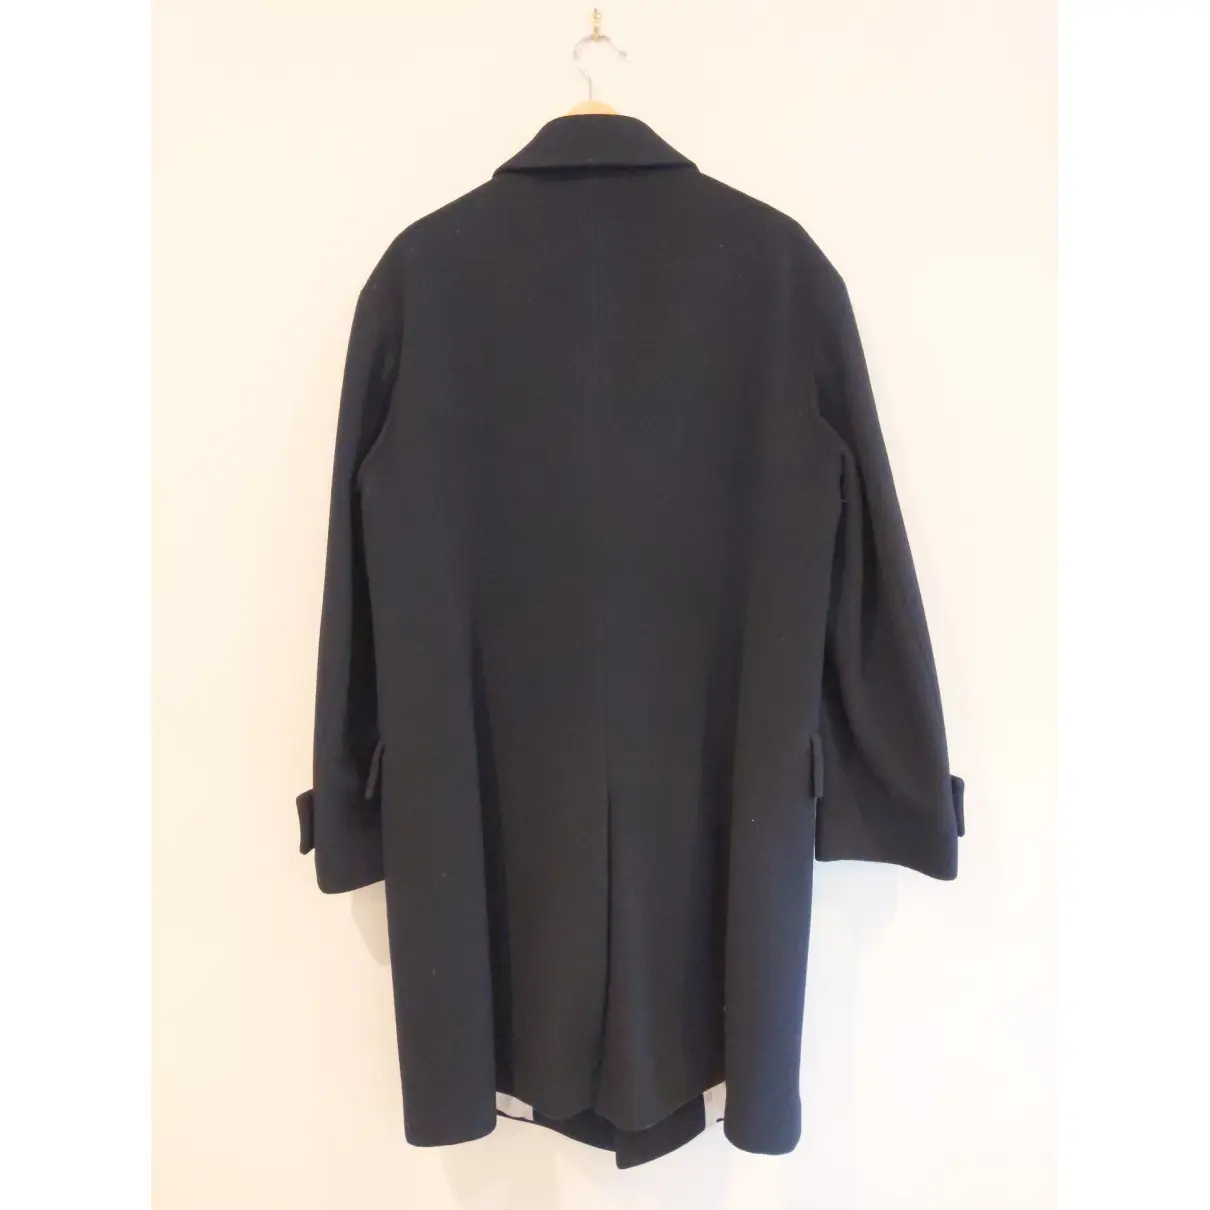 Buy Vivienne Westwood Wool coat online - Vintage